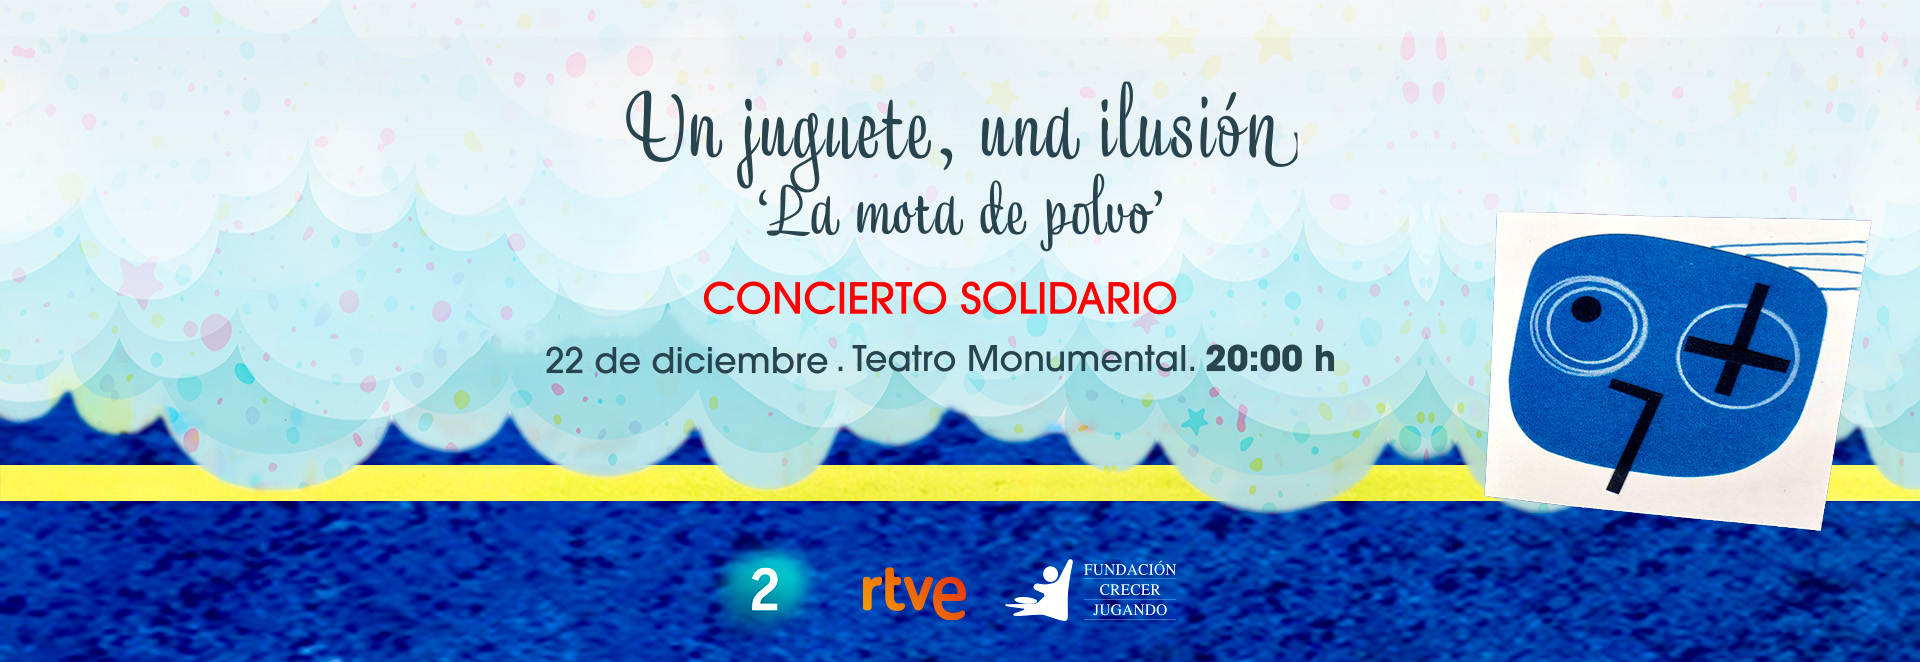 Banner Concierto Solidario